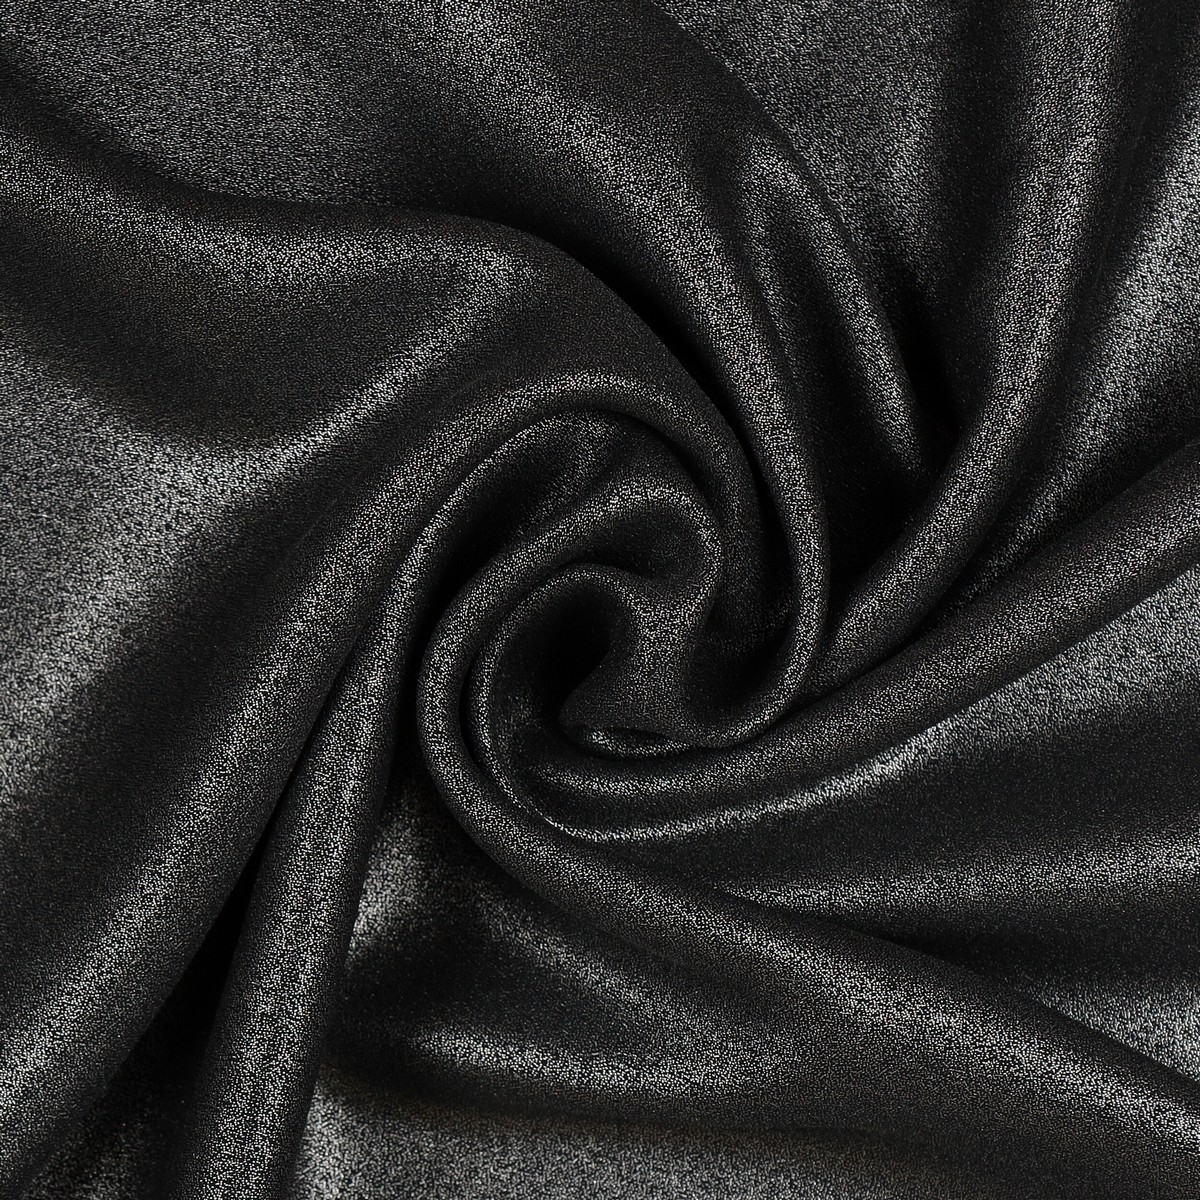 Tessuto Chiffon Glitter - Colore Nero - Glitter Argento 